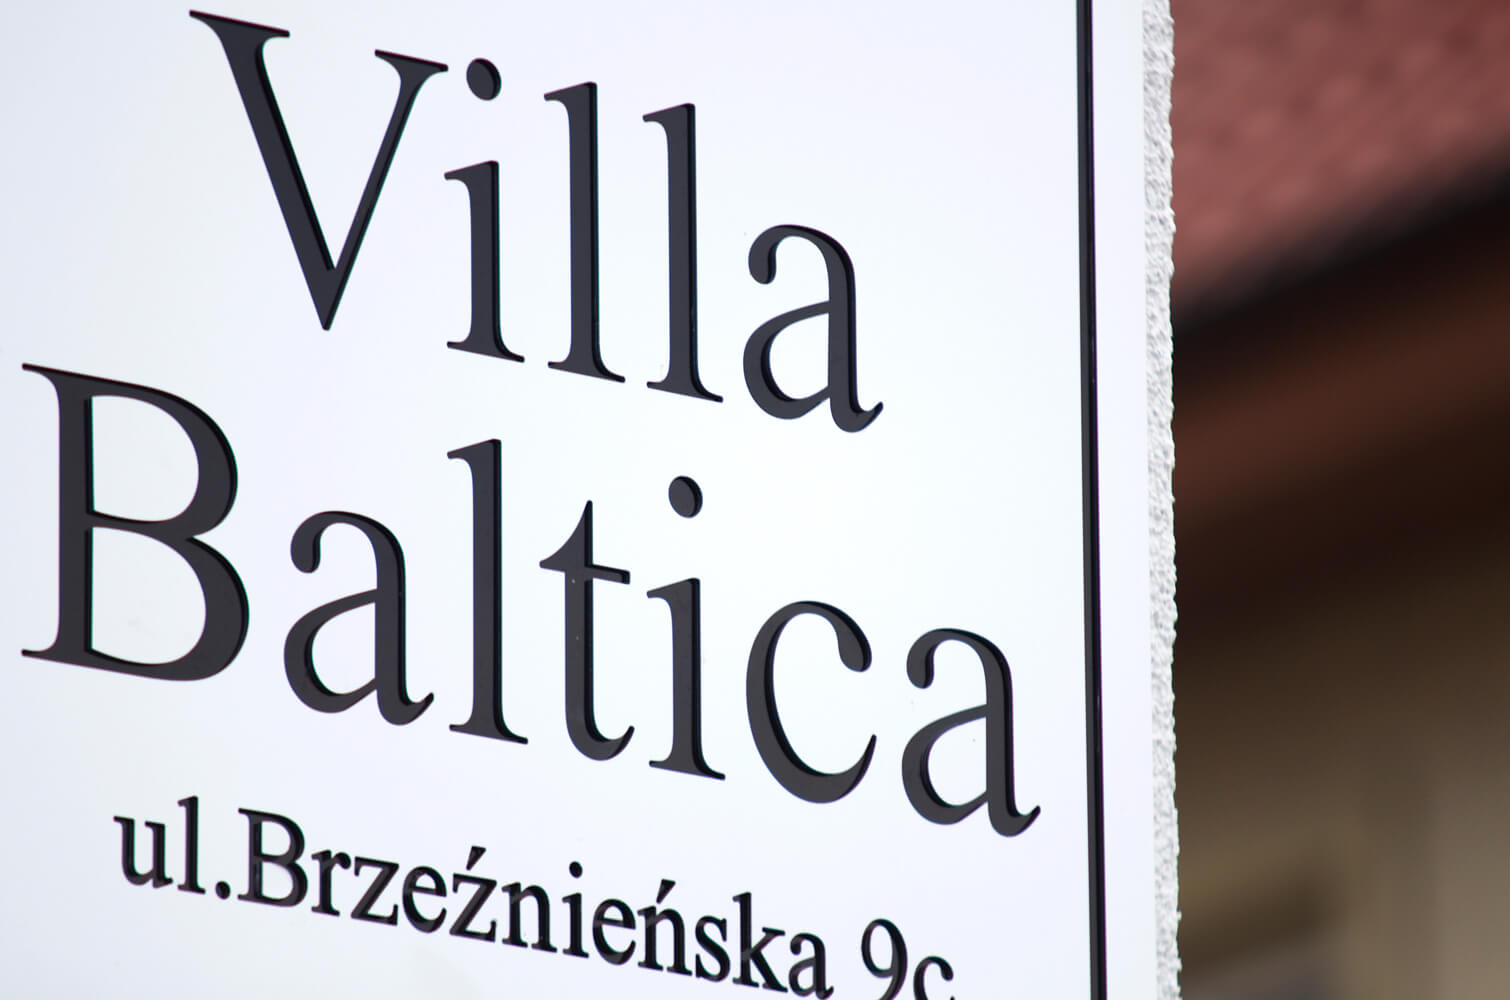 Villa Baltica - Villa Baltica - szyld firmy na kasetonie dibond w kolorze białego matu